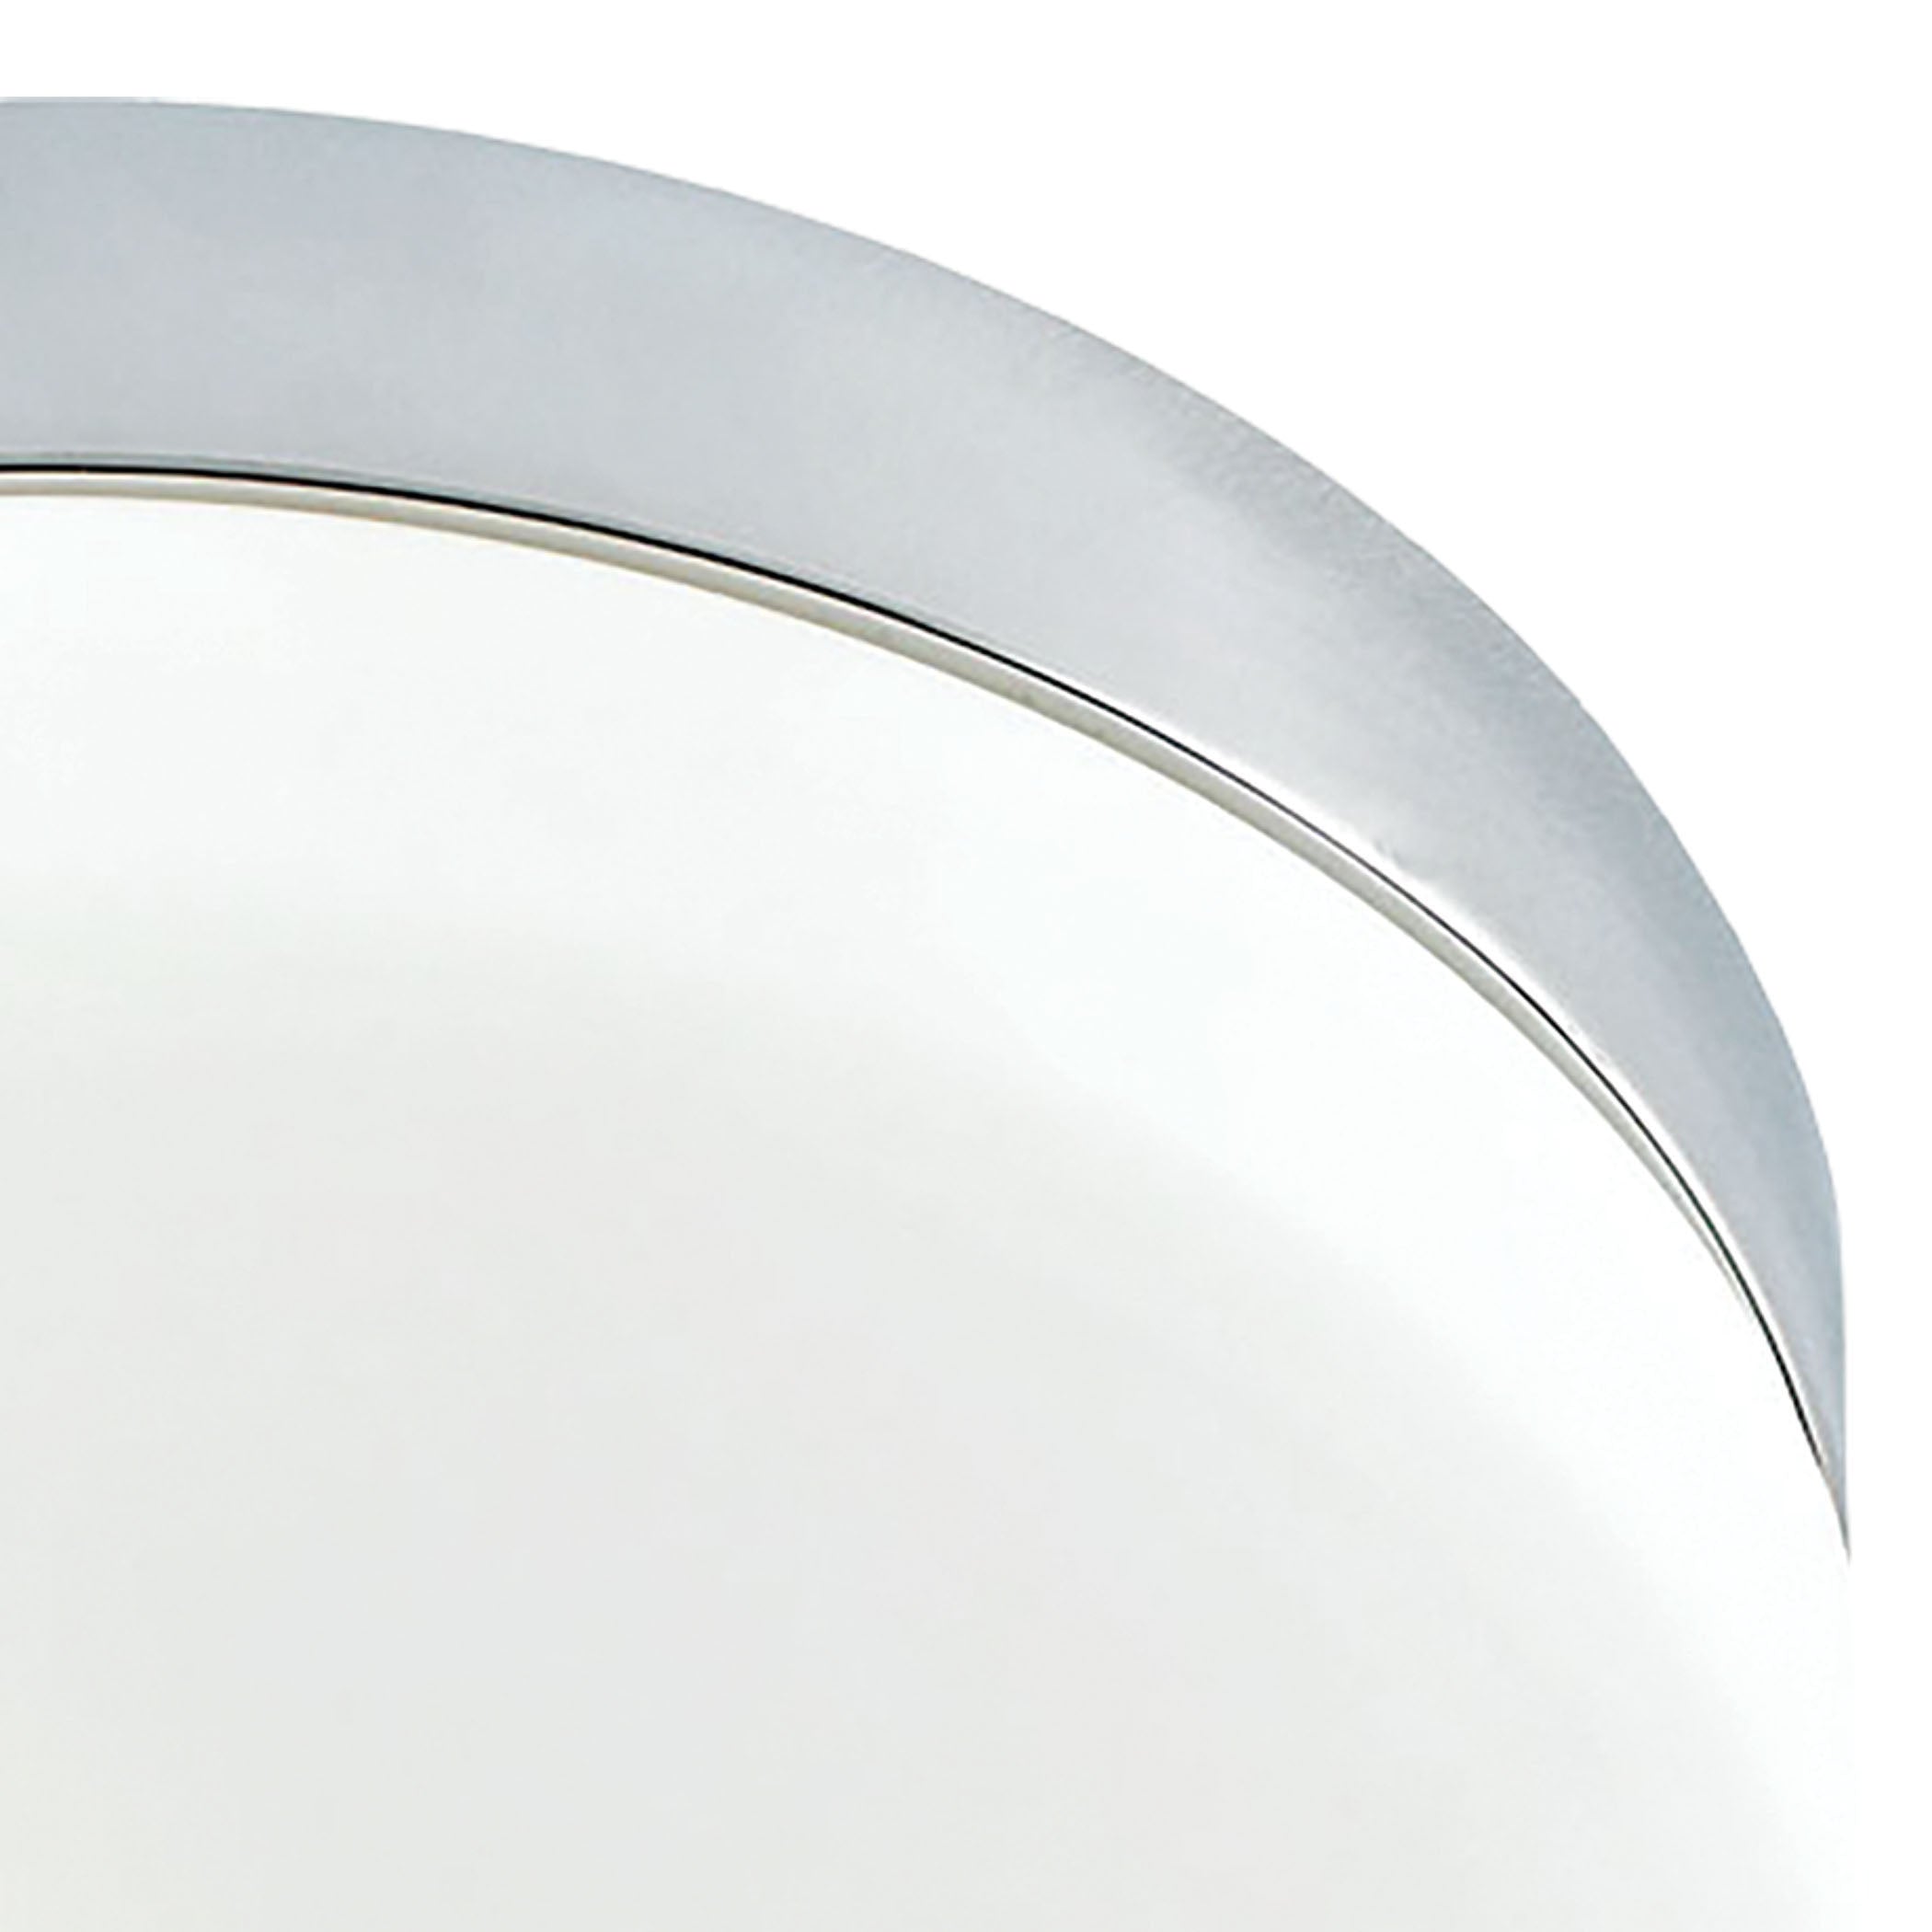 ELK Lighting FM1025-10-95 Disc 2-Light Flush Mount in Metallic Grey with White Opal Glass - Medium